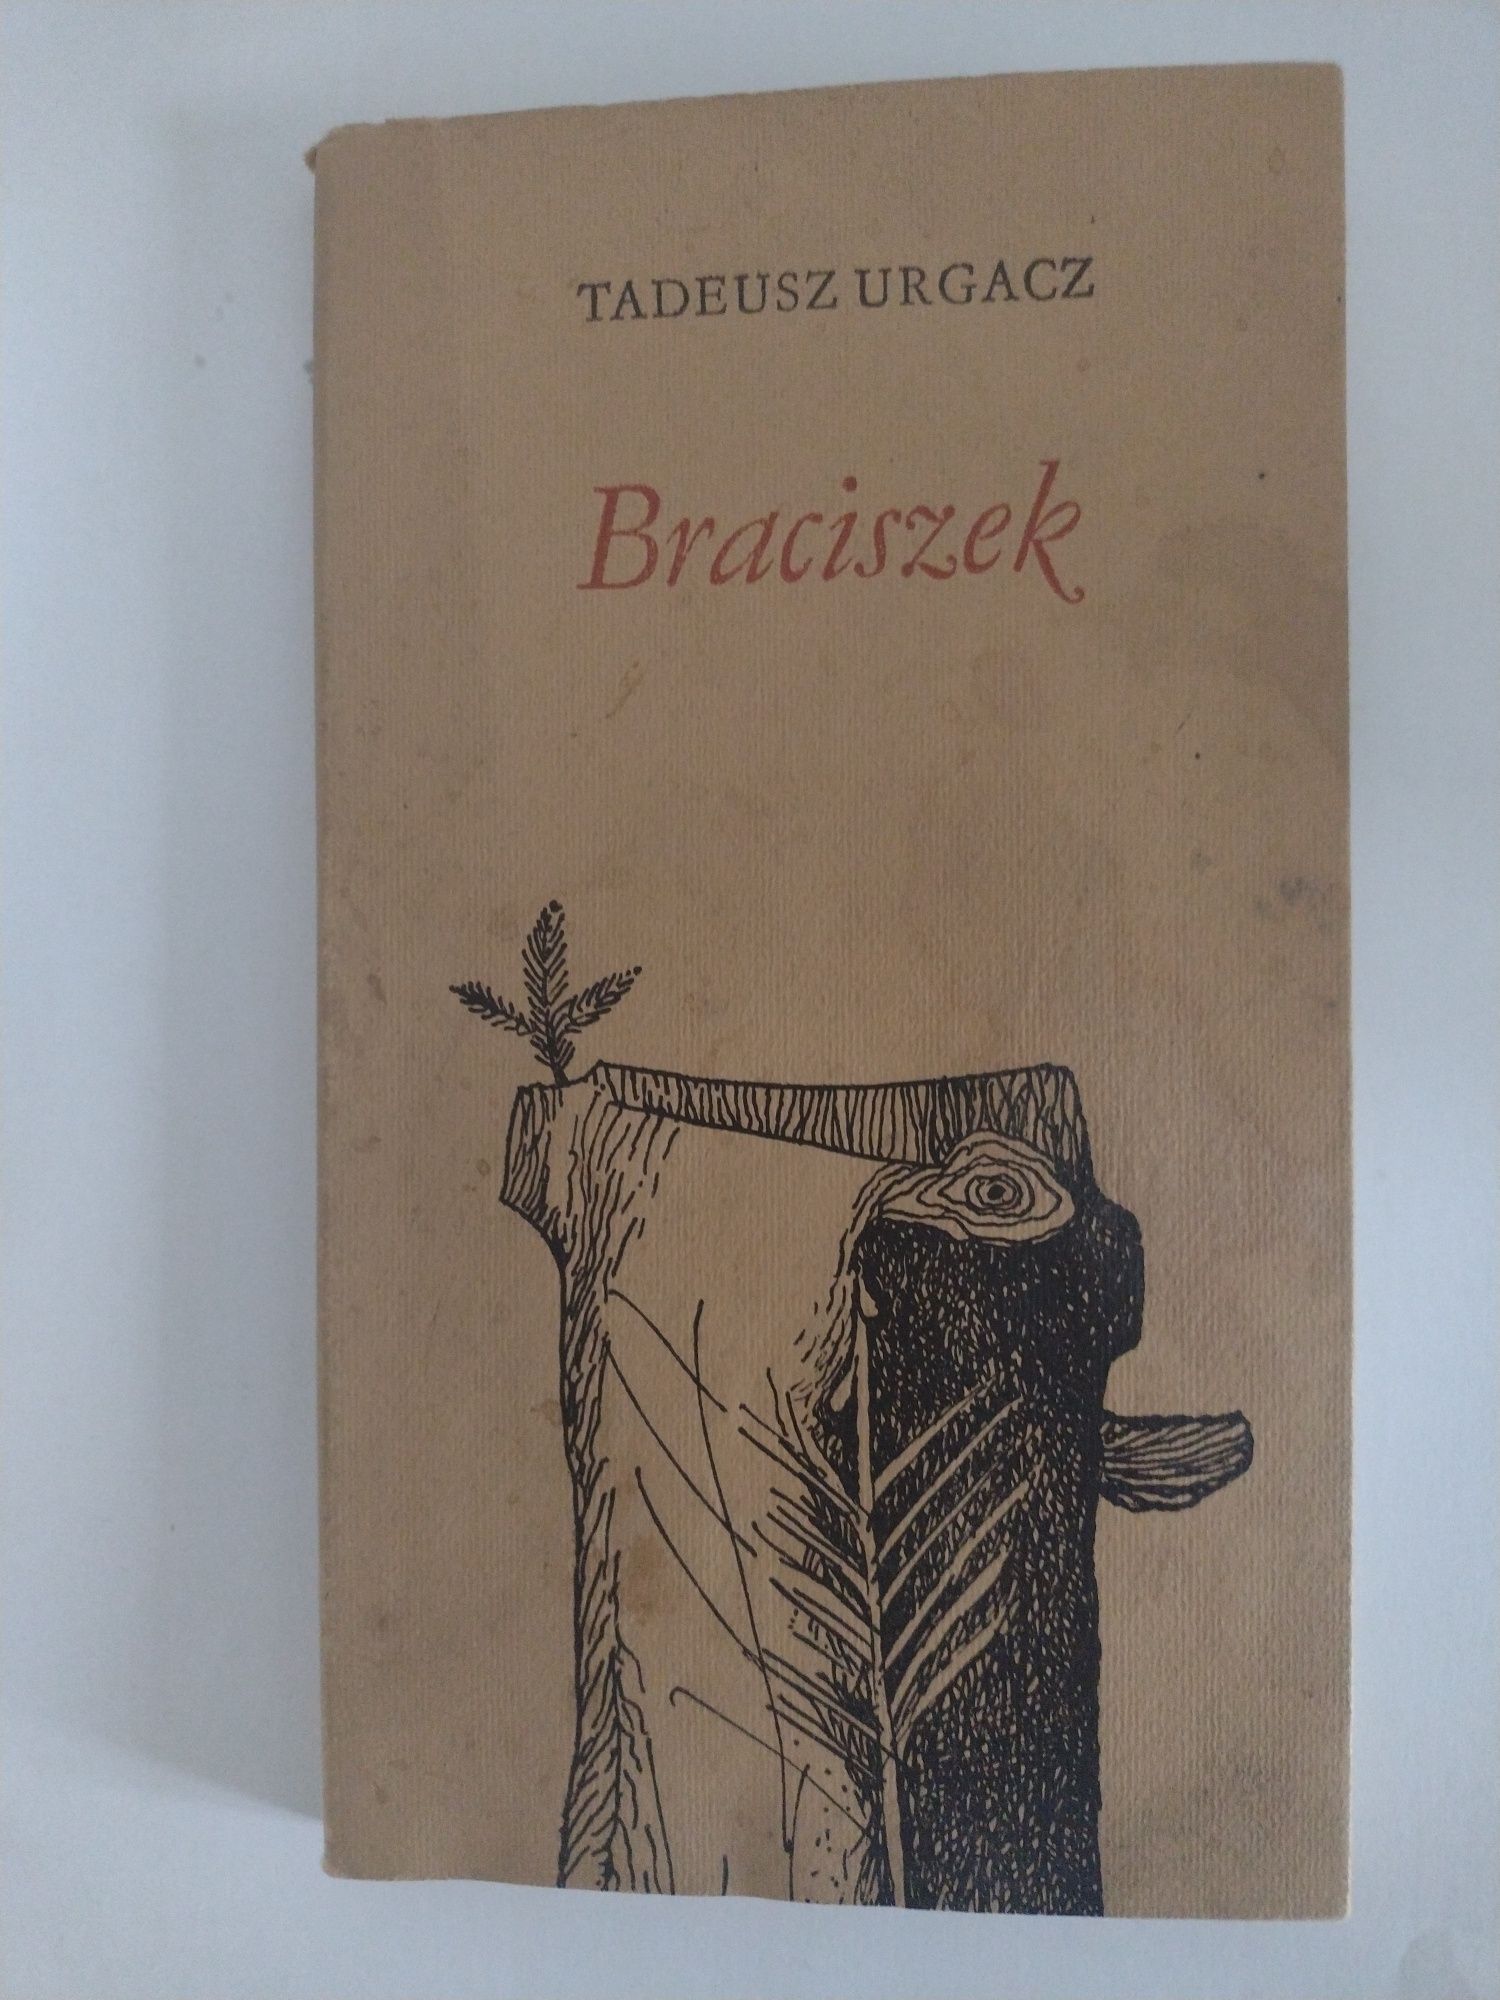 Tadeusz Urgacz Braciszek